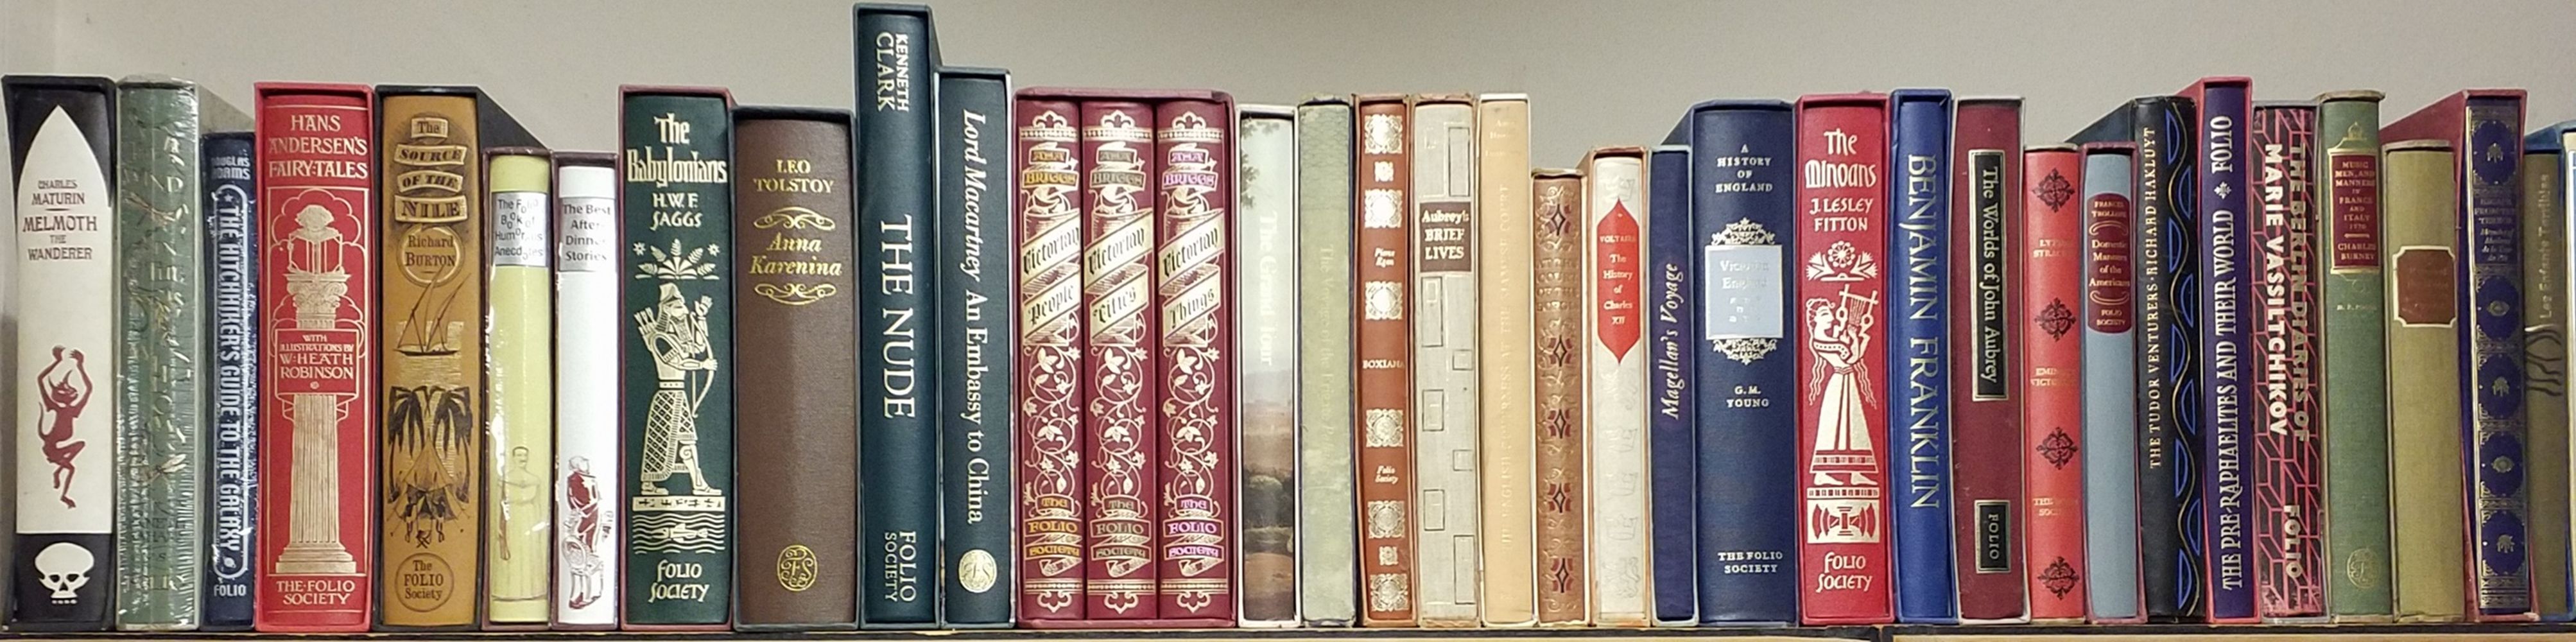 Folio Society. 78 volumes